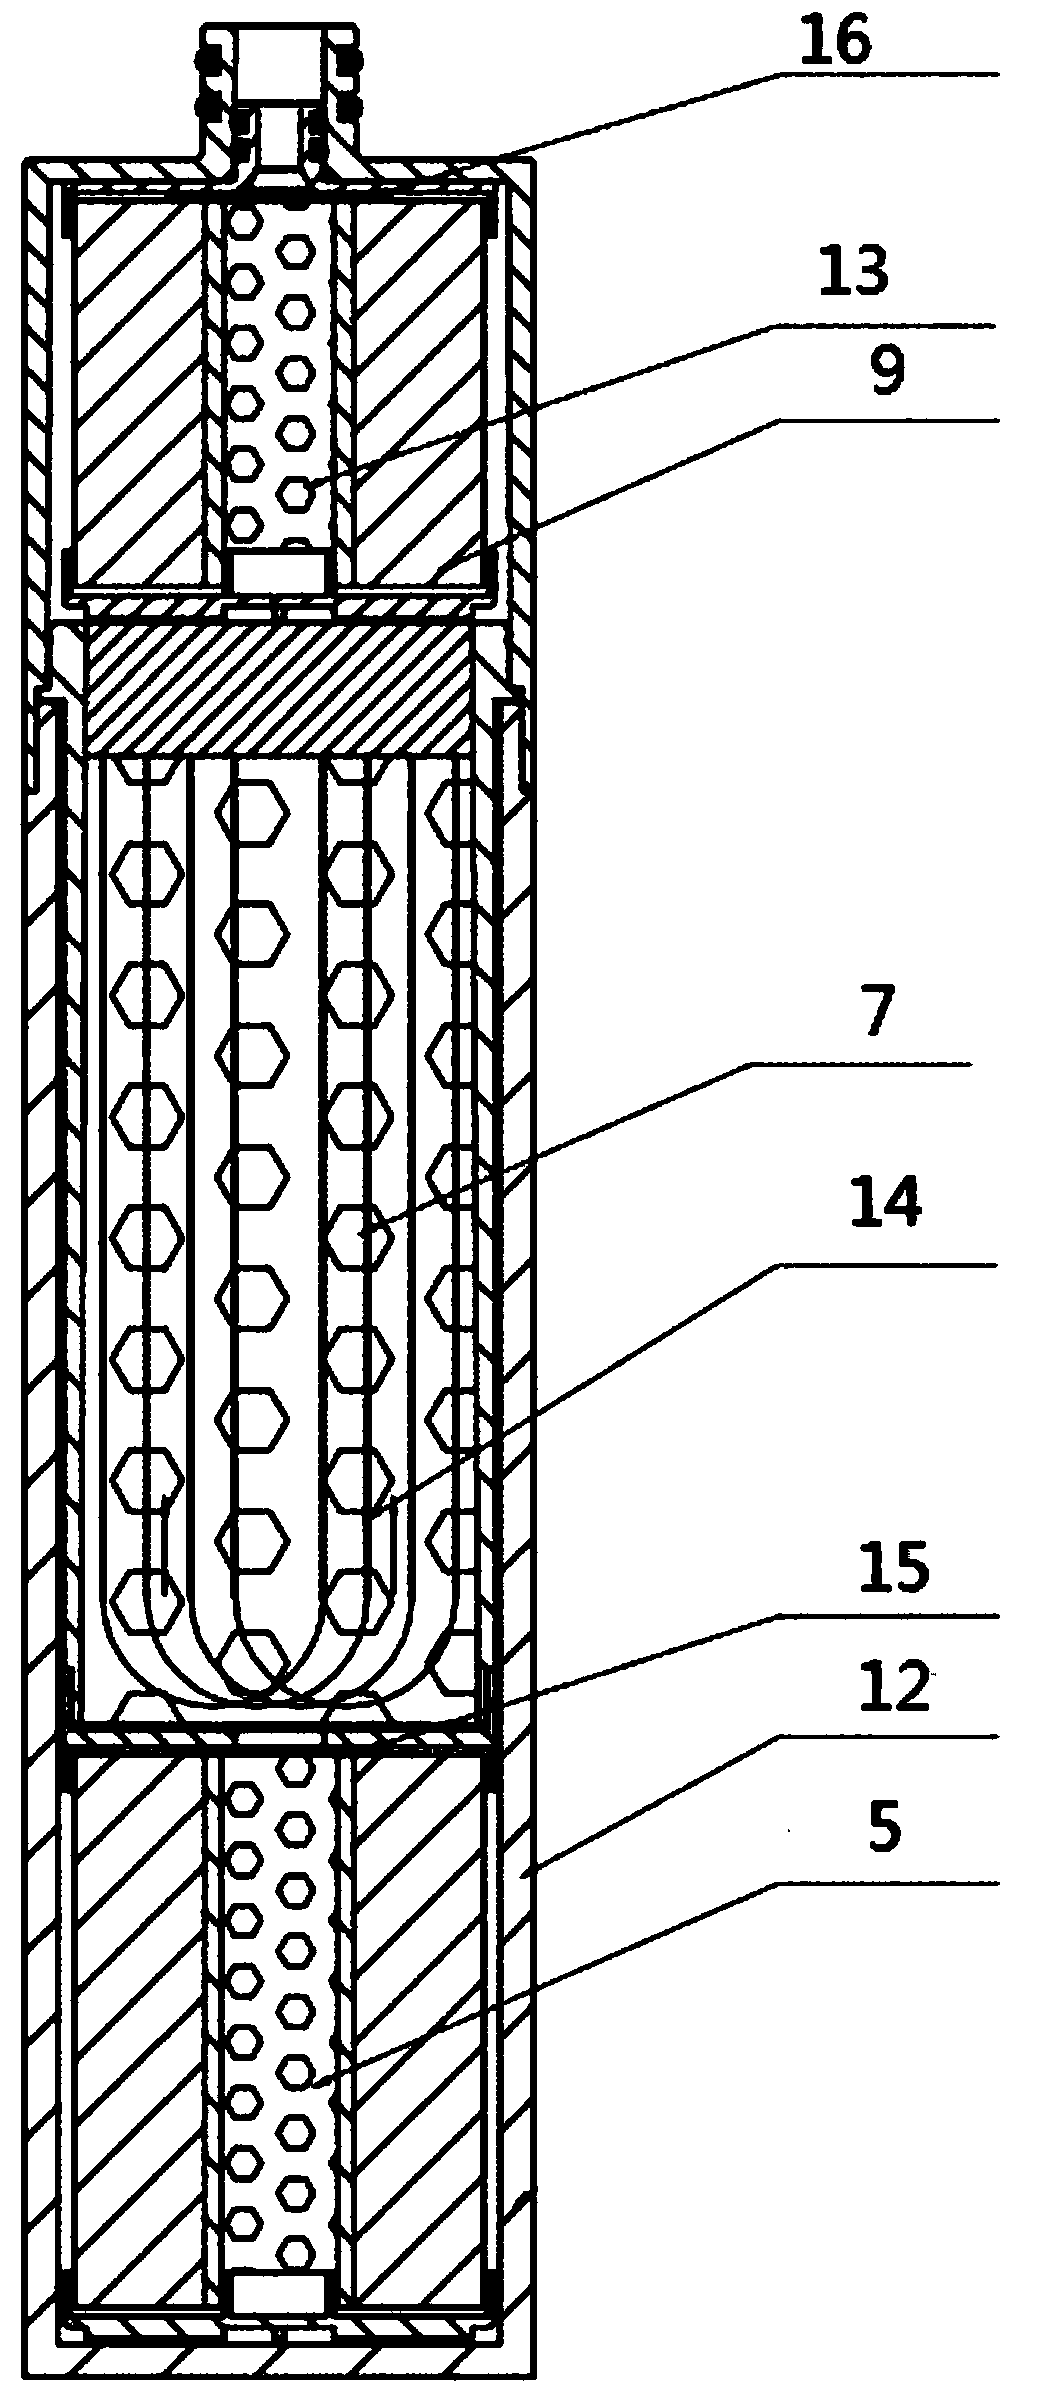 Faucet filter element structure